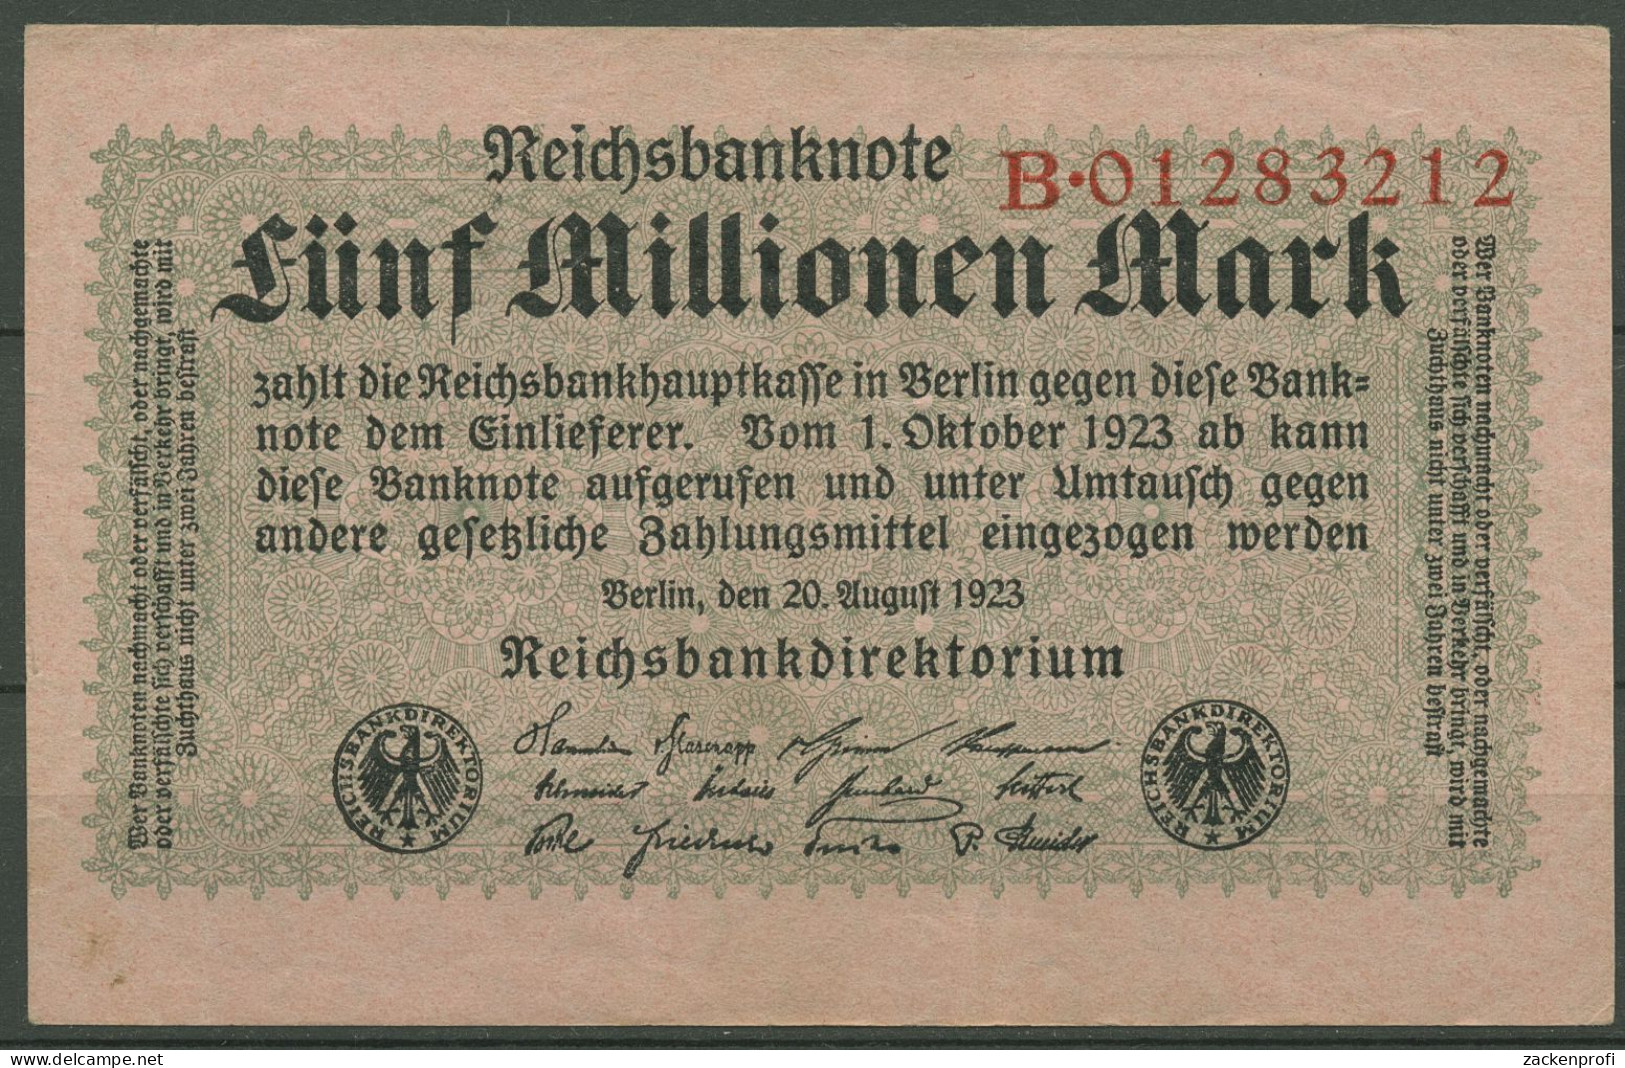 Dt. Reich 5 Millionen Mark 1923, DEU-117a Serie B, Leicht Gebraucht (K1232) - 5 Millionen Mark